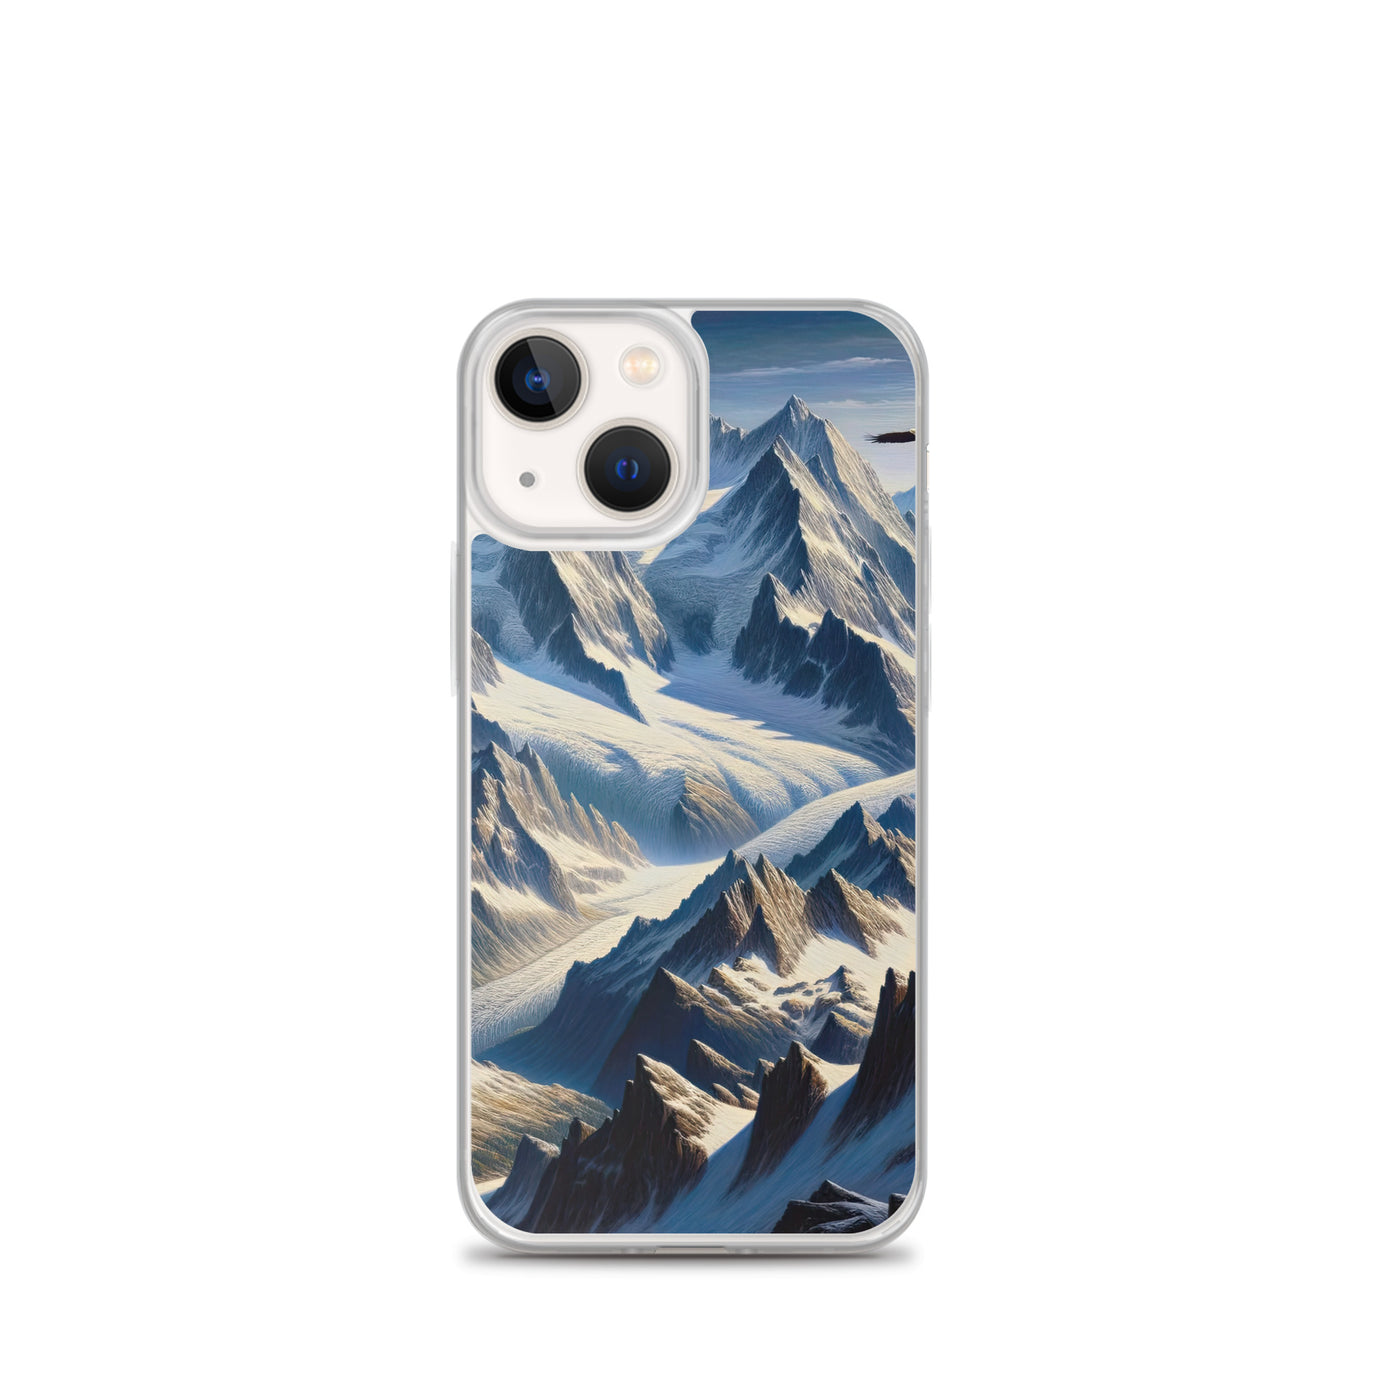 Ölgemälde der Alpen mit hervorgehobenen zerklüfteten Geländen im Licht und Schatten - iPhone Schutzhülle (durchsichtig) berge xxx yyy zzz iPhone 13 mini